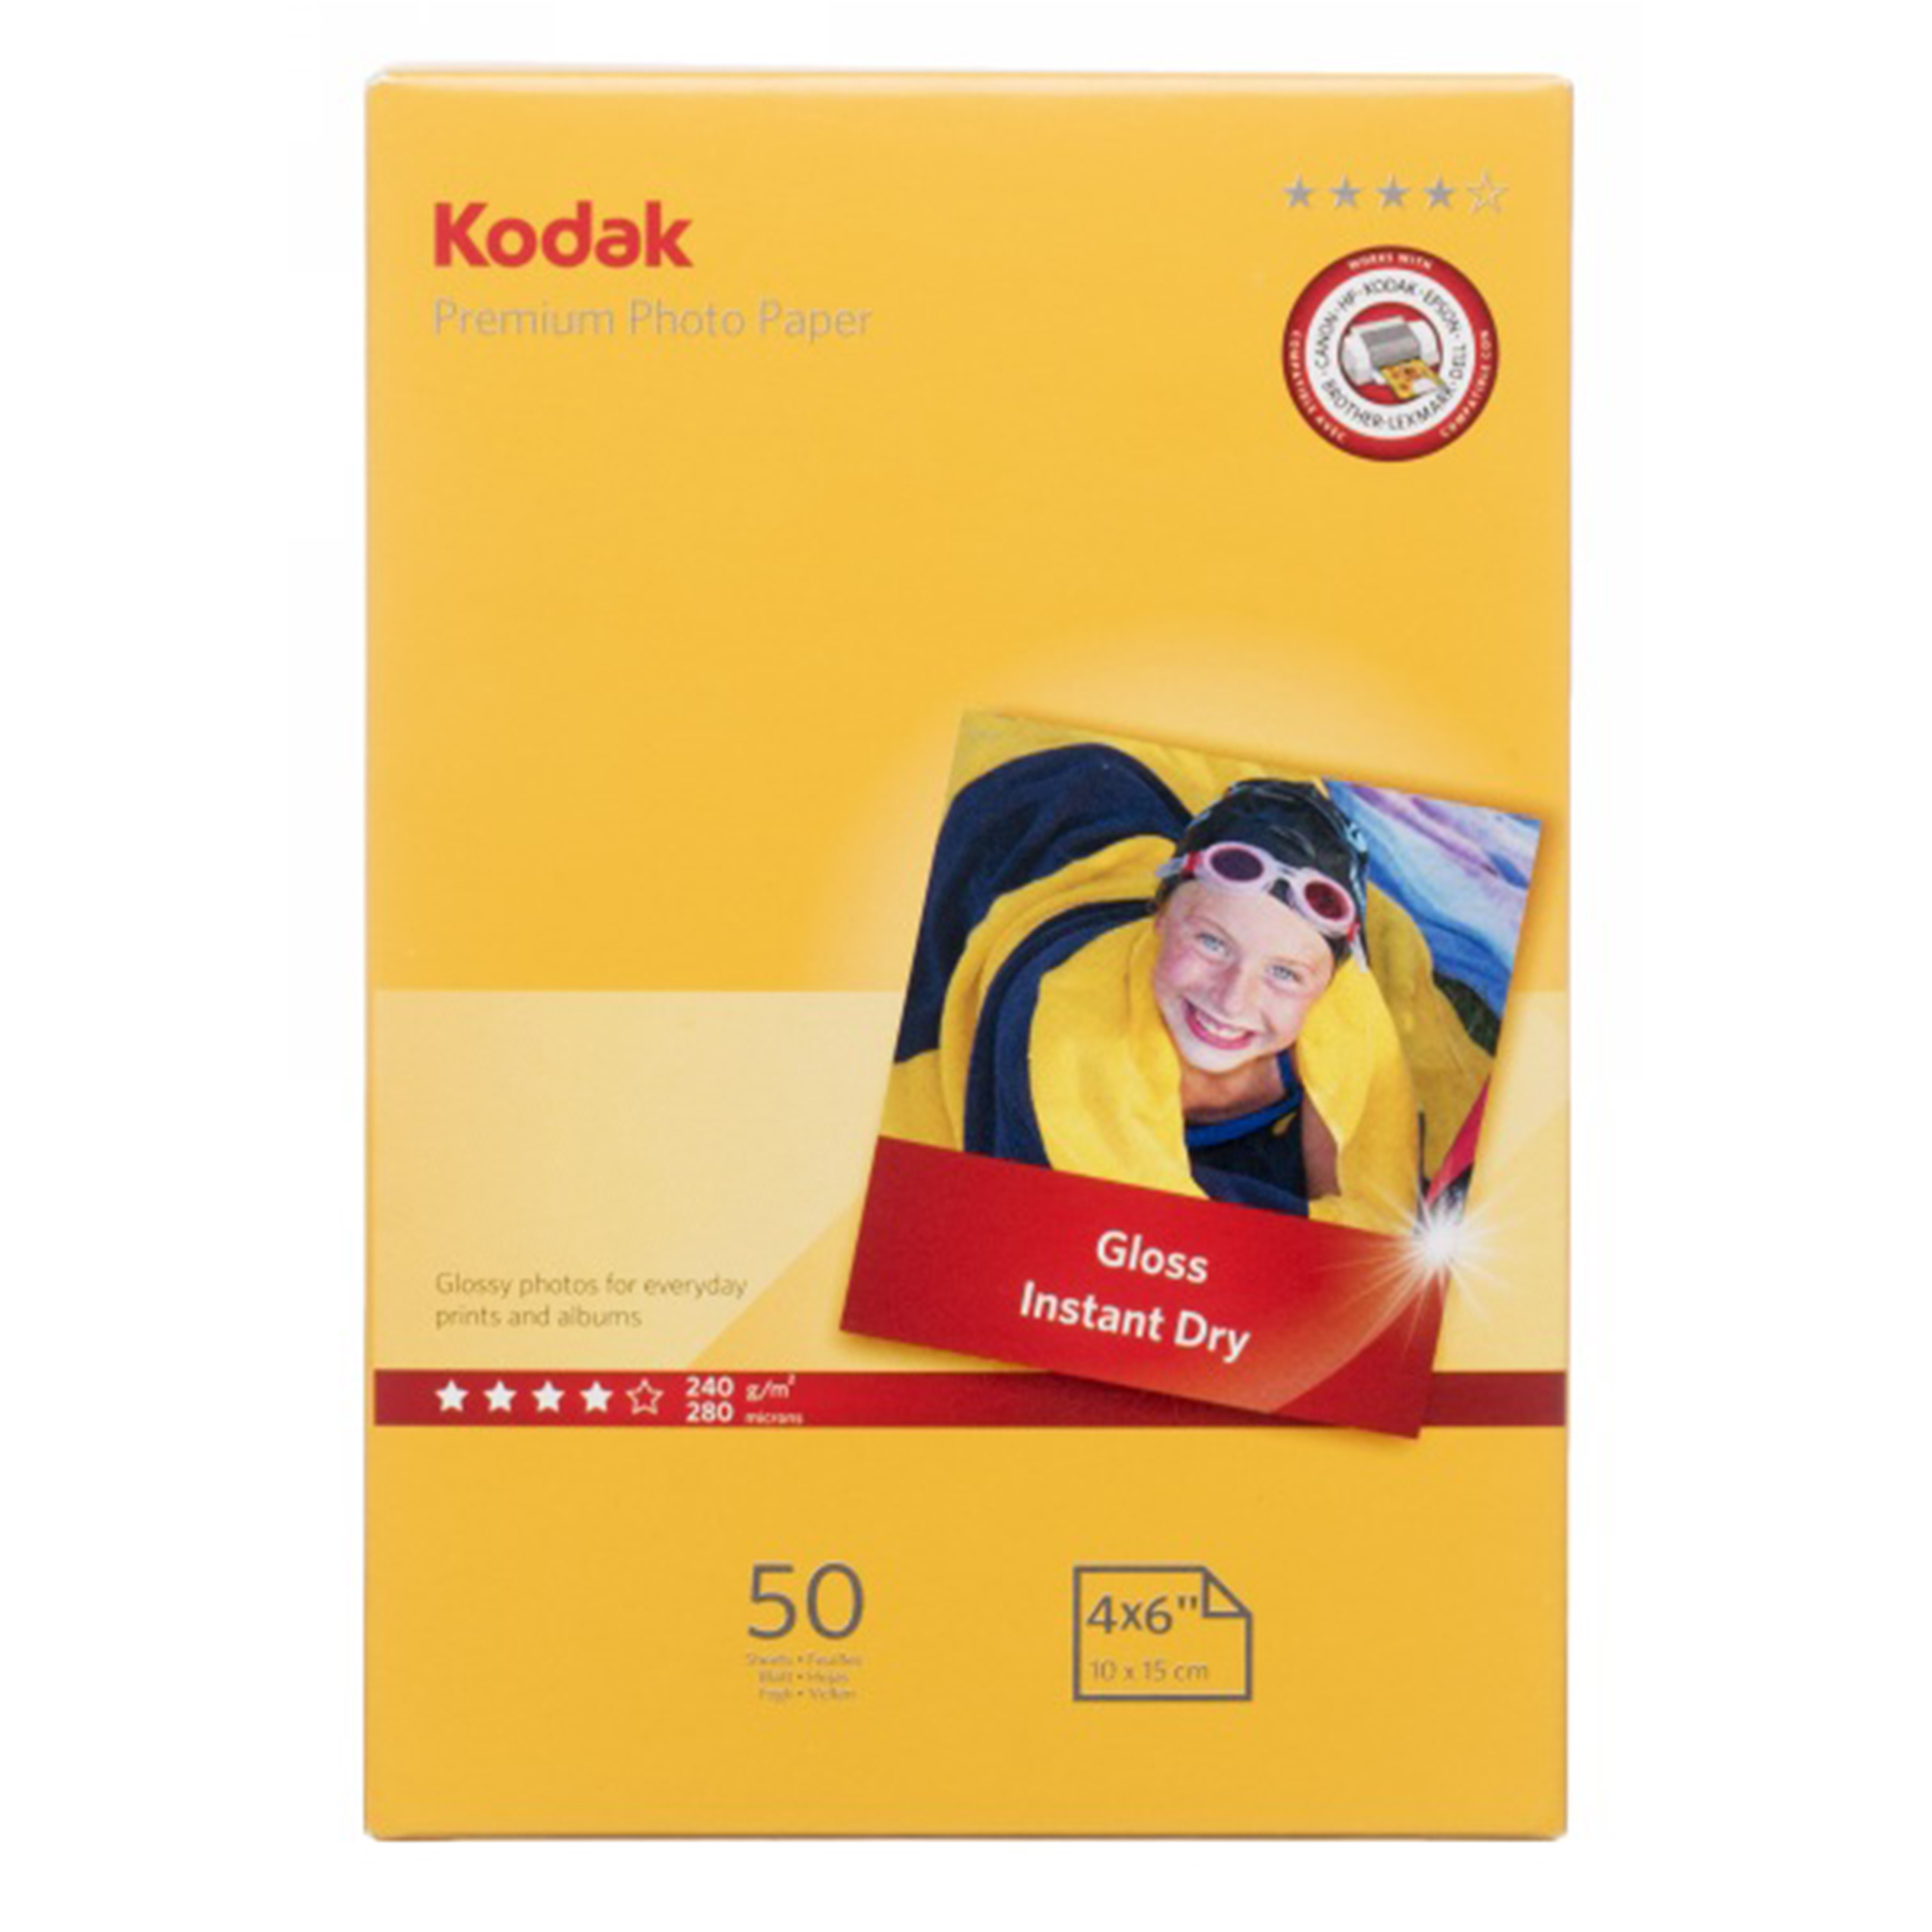 Kodak 6 x 4 (15 x 10cm) Gloss Premium Photo Paper 50 Sheets